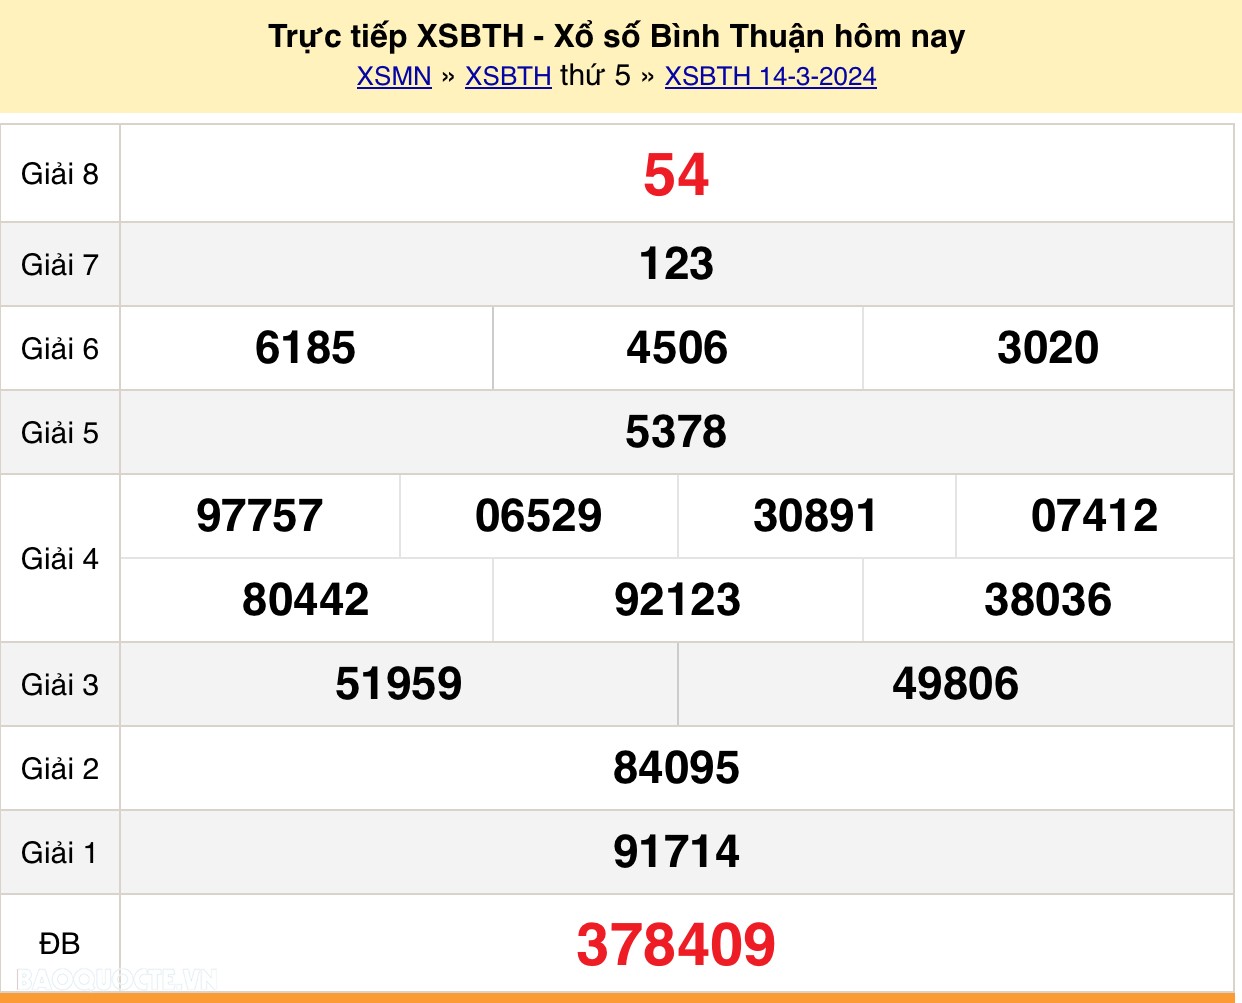 XSBTH 14/3, trực tiếp kết quả xổ số Bình Thuận hôm nay 14/3/2024. XSBTH thứ 5